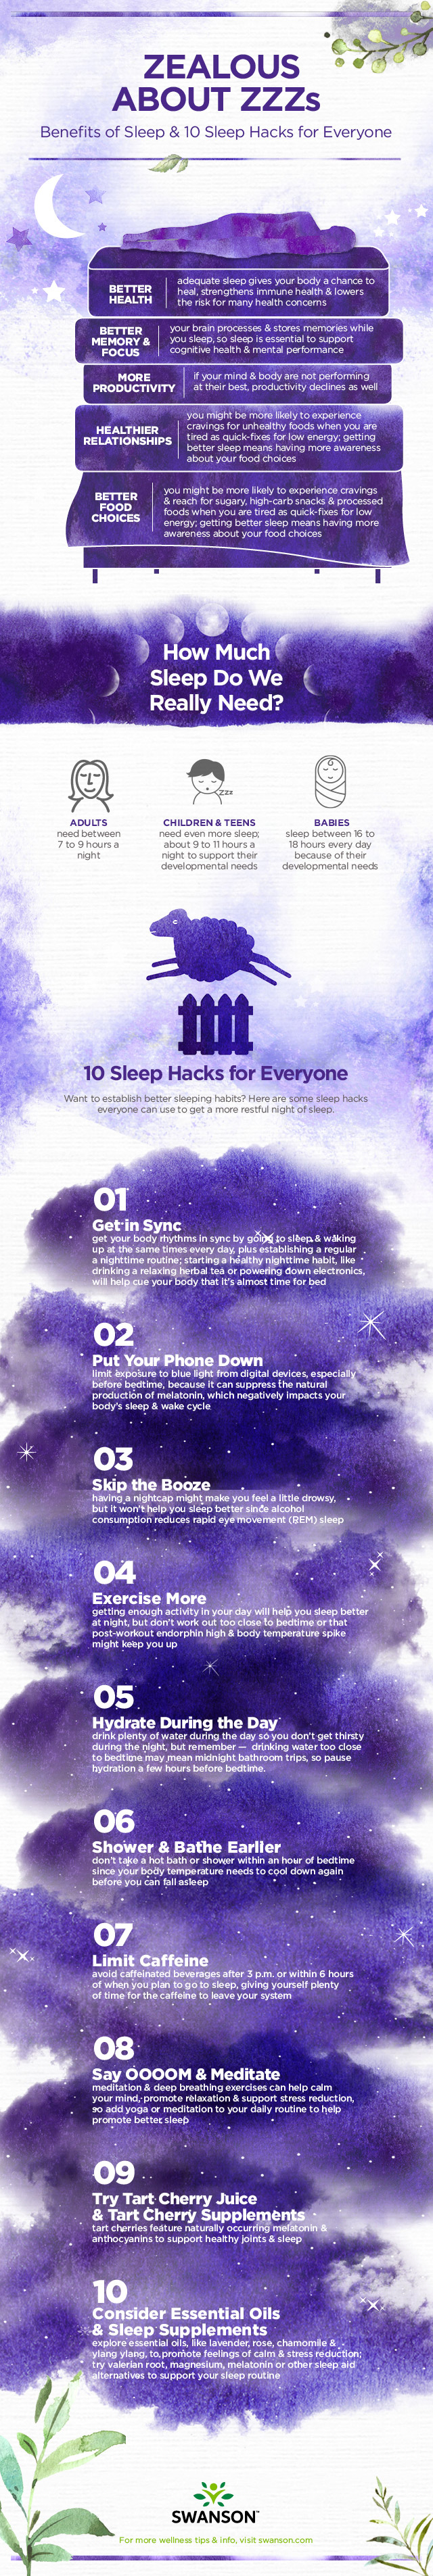 Zealous About Zzzs: Benefits of Sleep and Sleep Hacks for Everyone